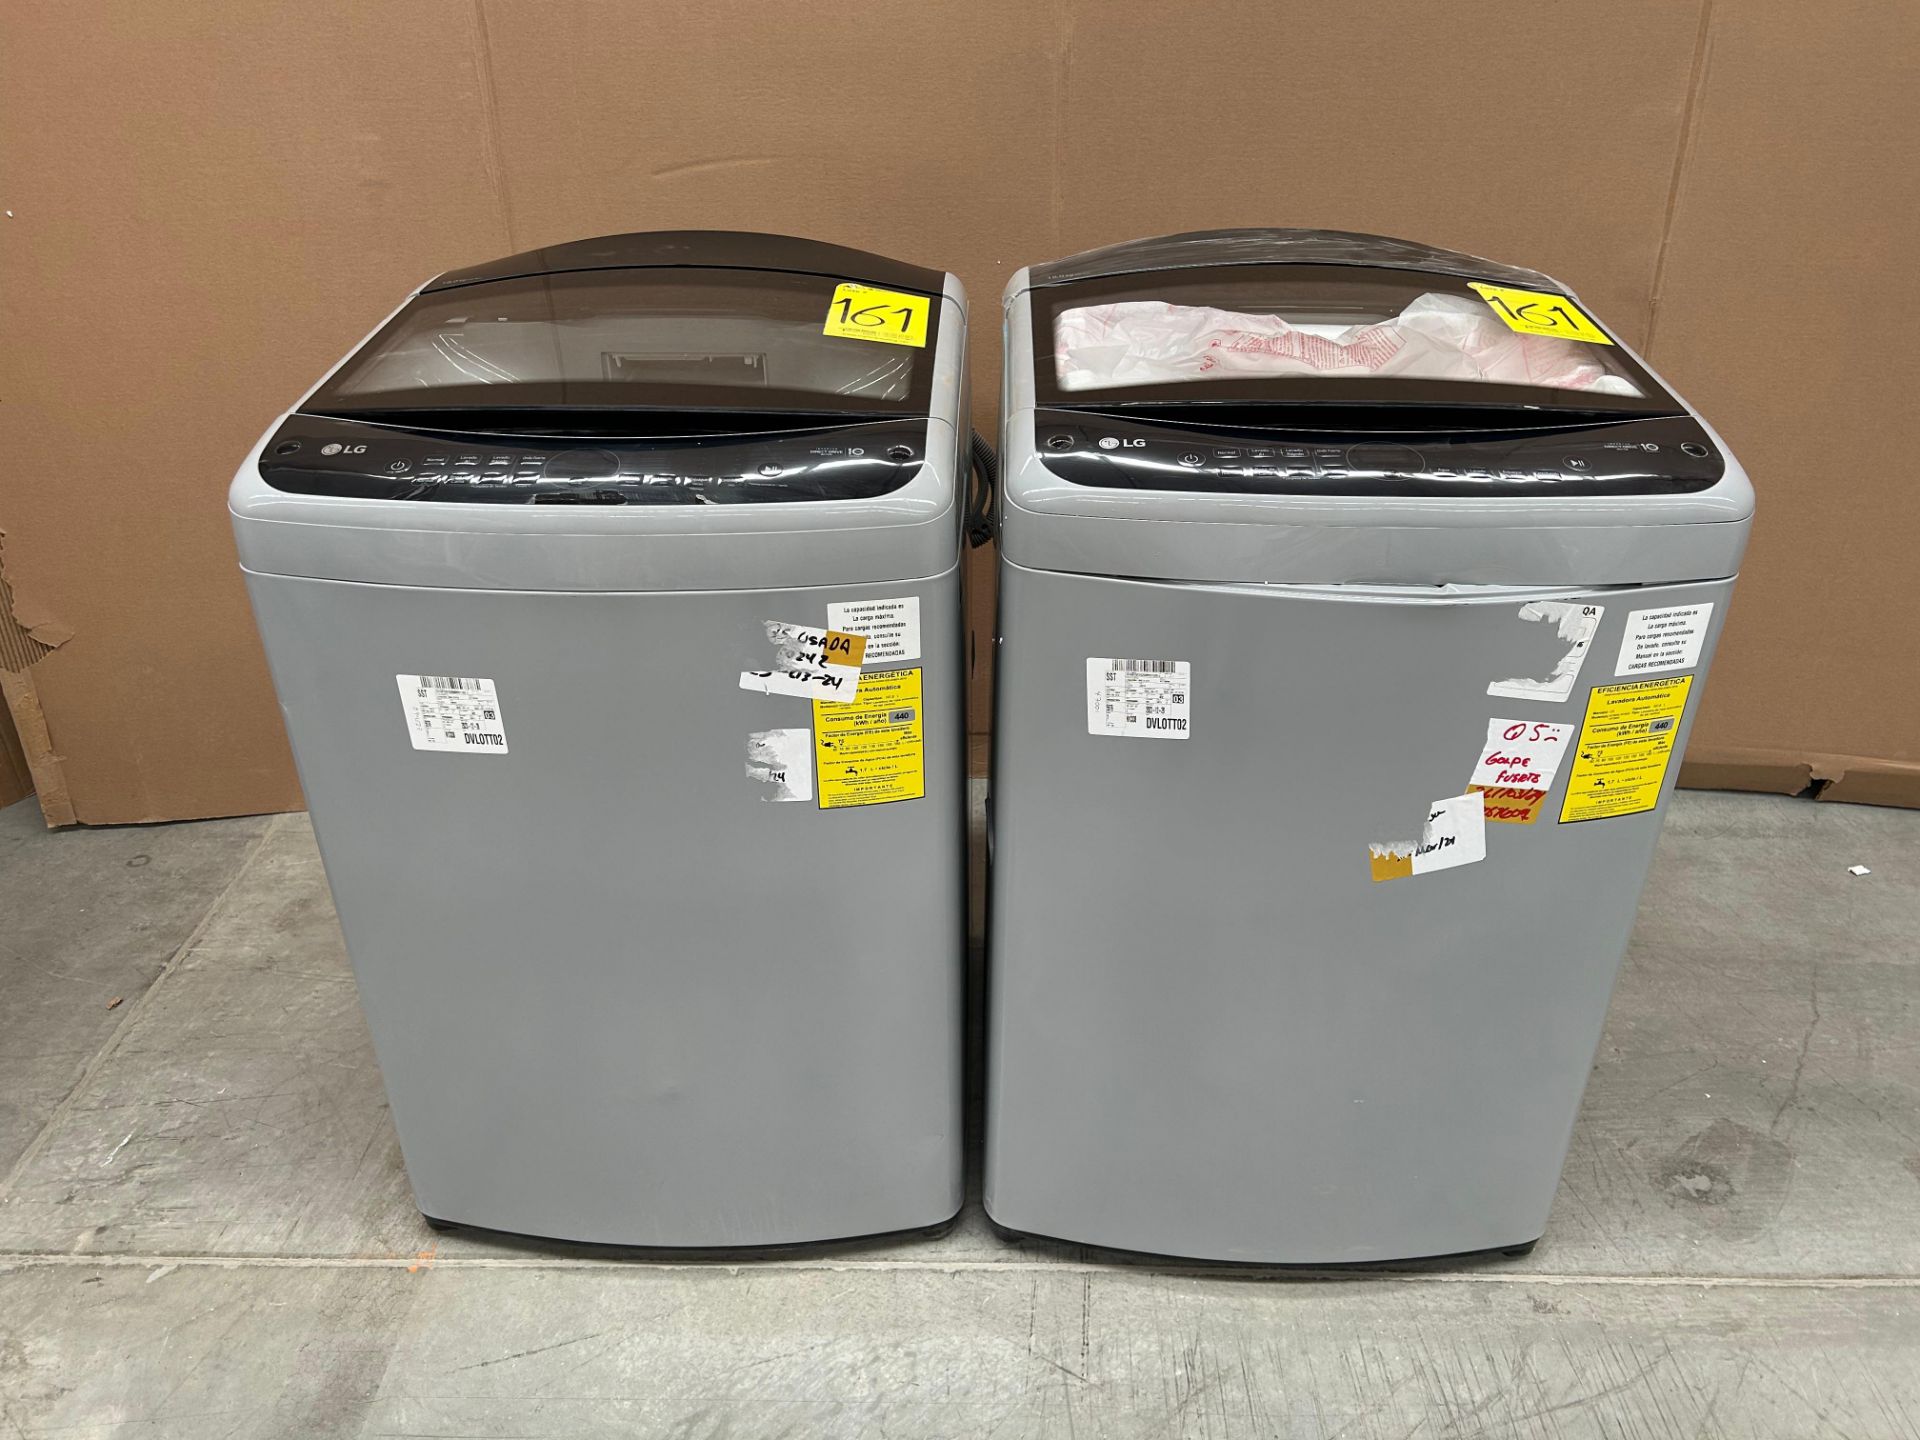 Lote de 2 lavadoras contiene: 1 Lavadora de 18 KG Marca LG, Modelo WT18DV6, Serie 4B032, Color GRIS